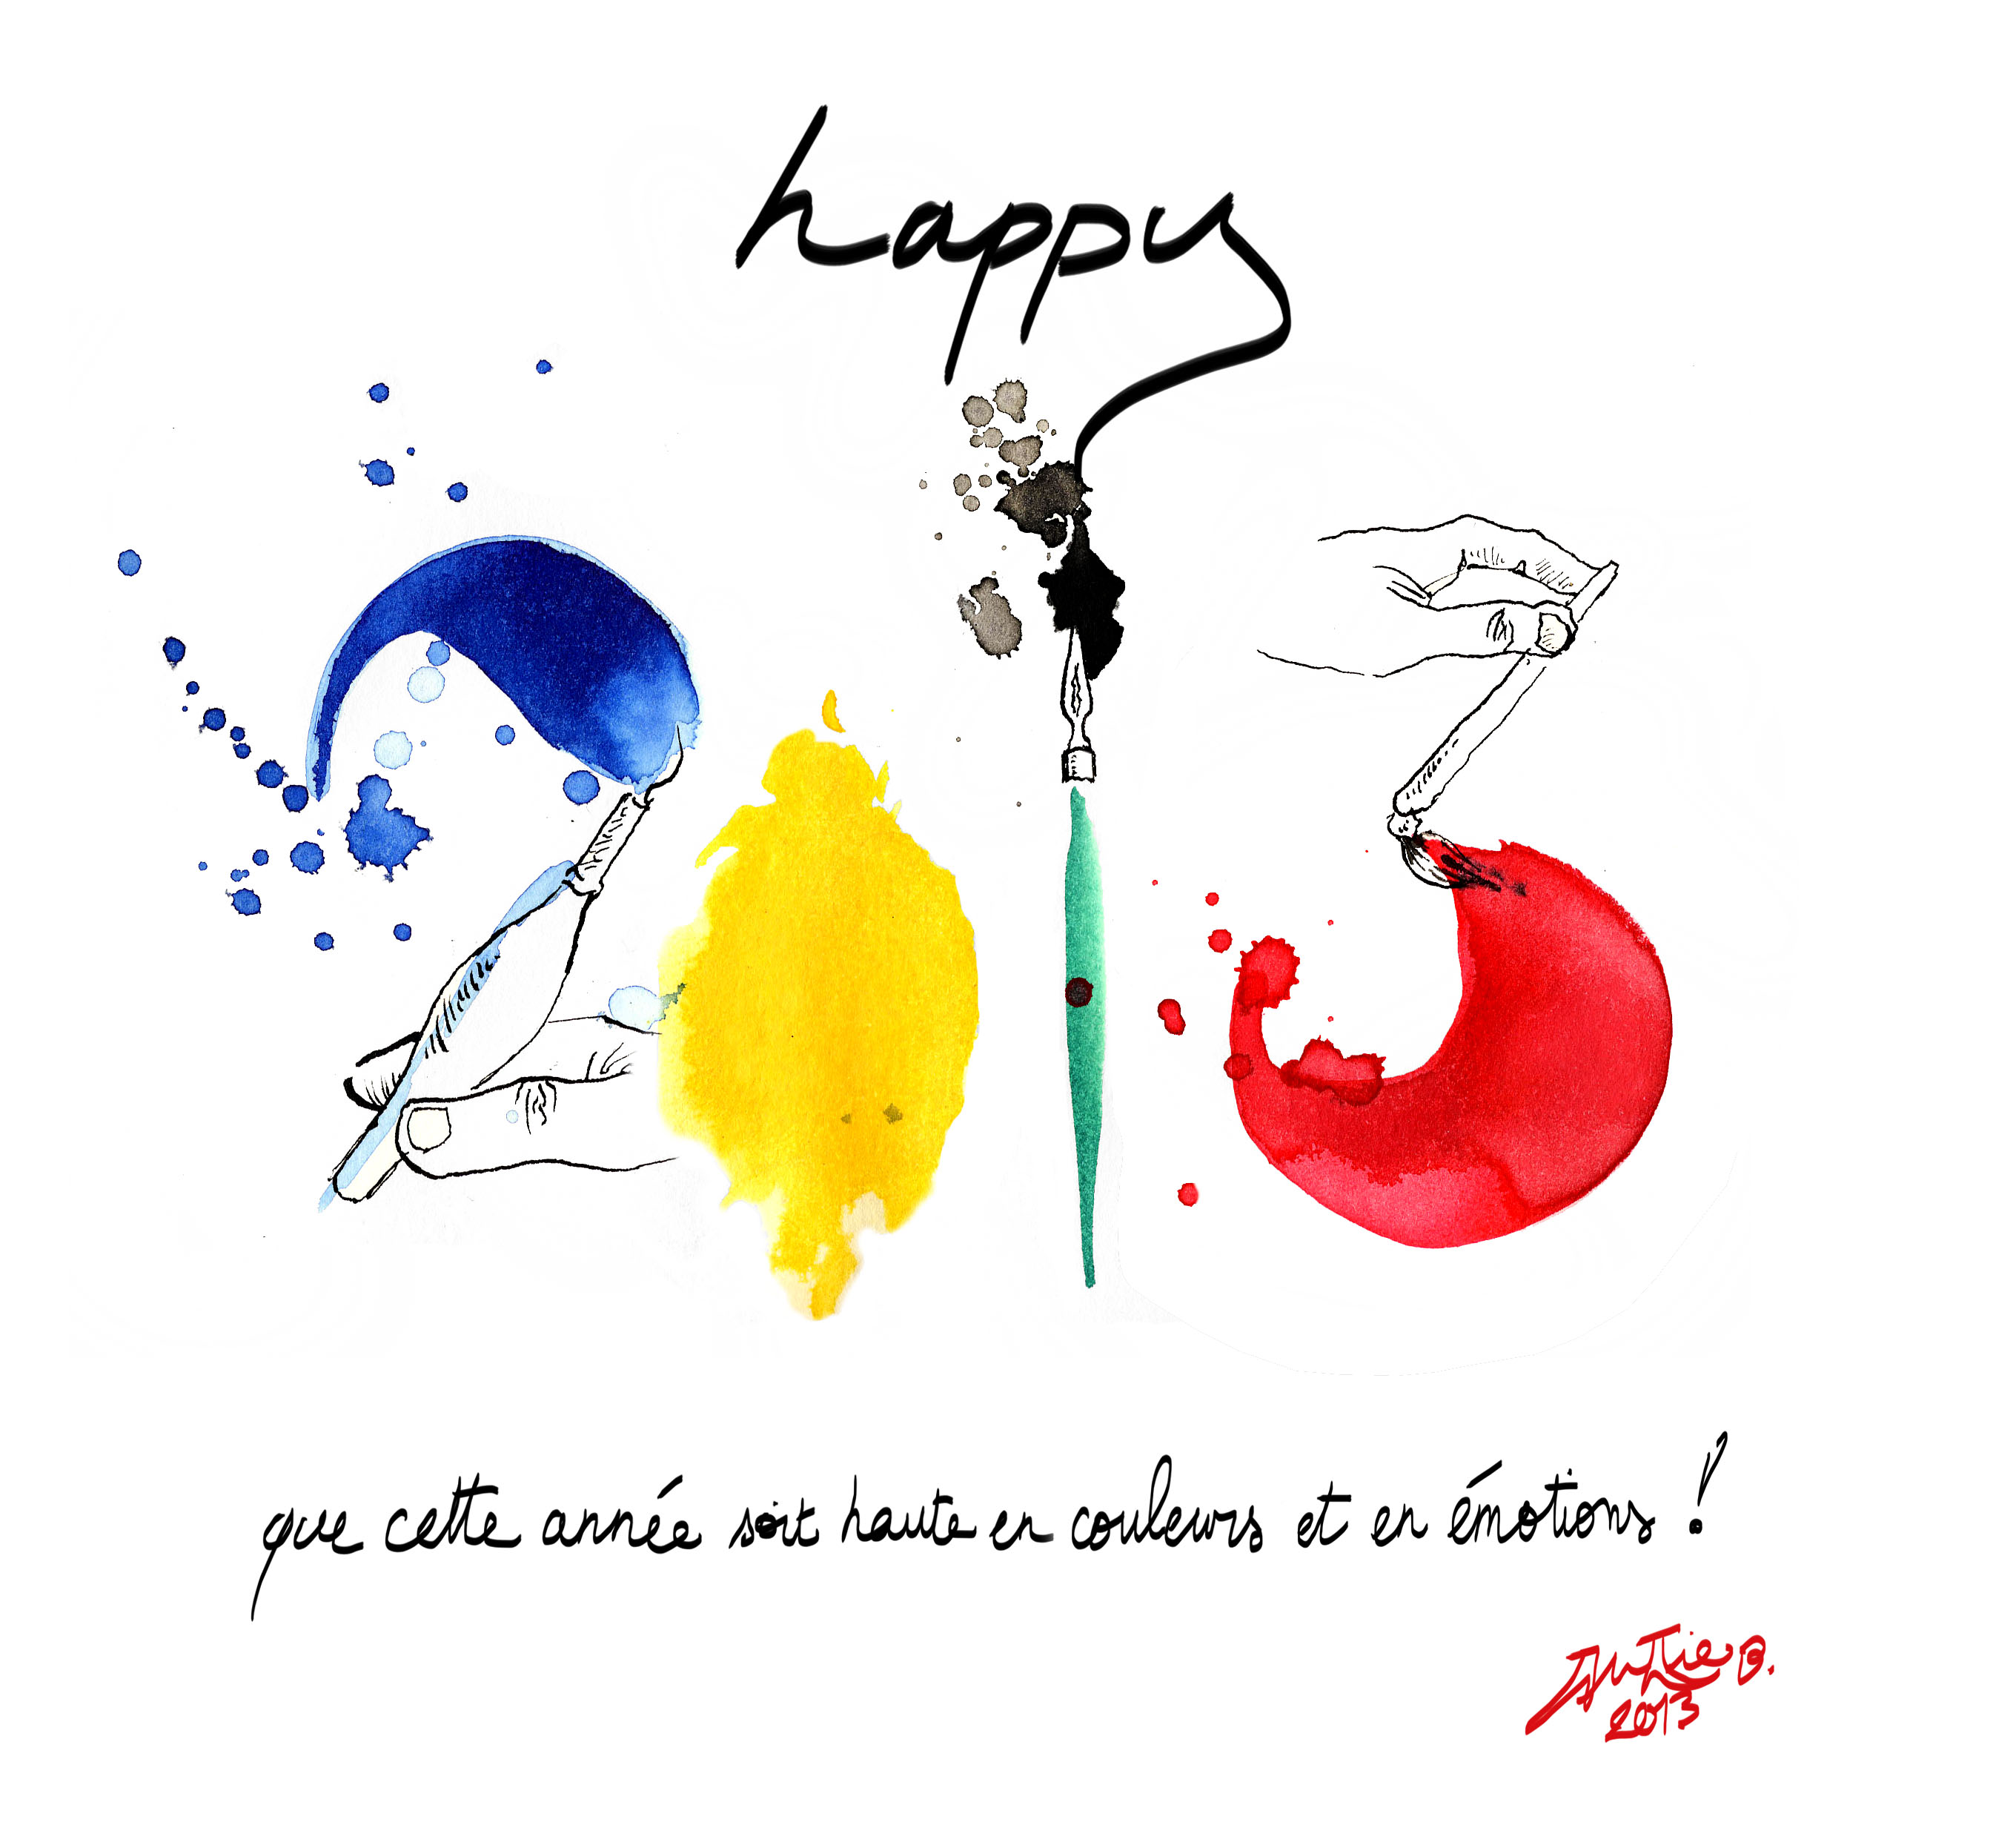 julie blaquié graphiste illustratrice sur bordeaux vous souhaite une bonne année 2013